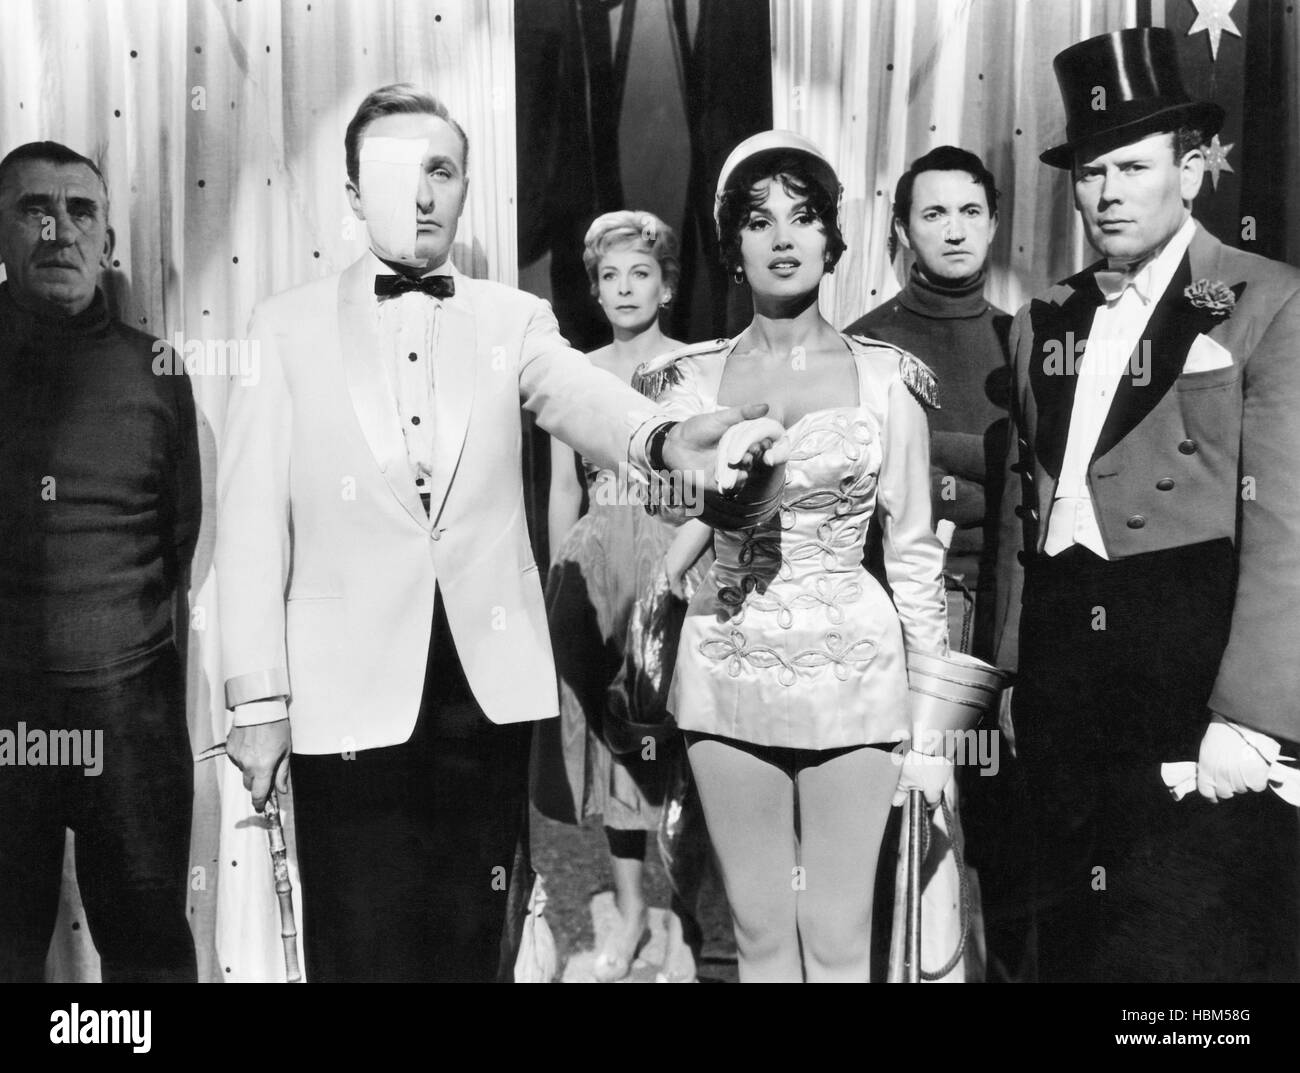 Cirque des horreurs, Anton Diffring, Yvonne Romain, Chris Christian (première rangée), 1960 Banque D'Images